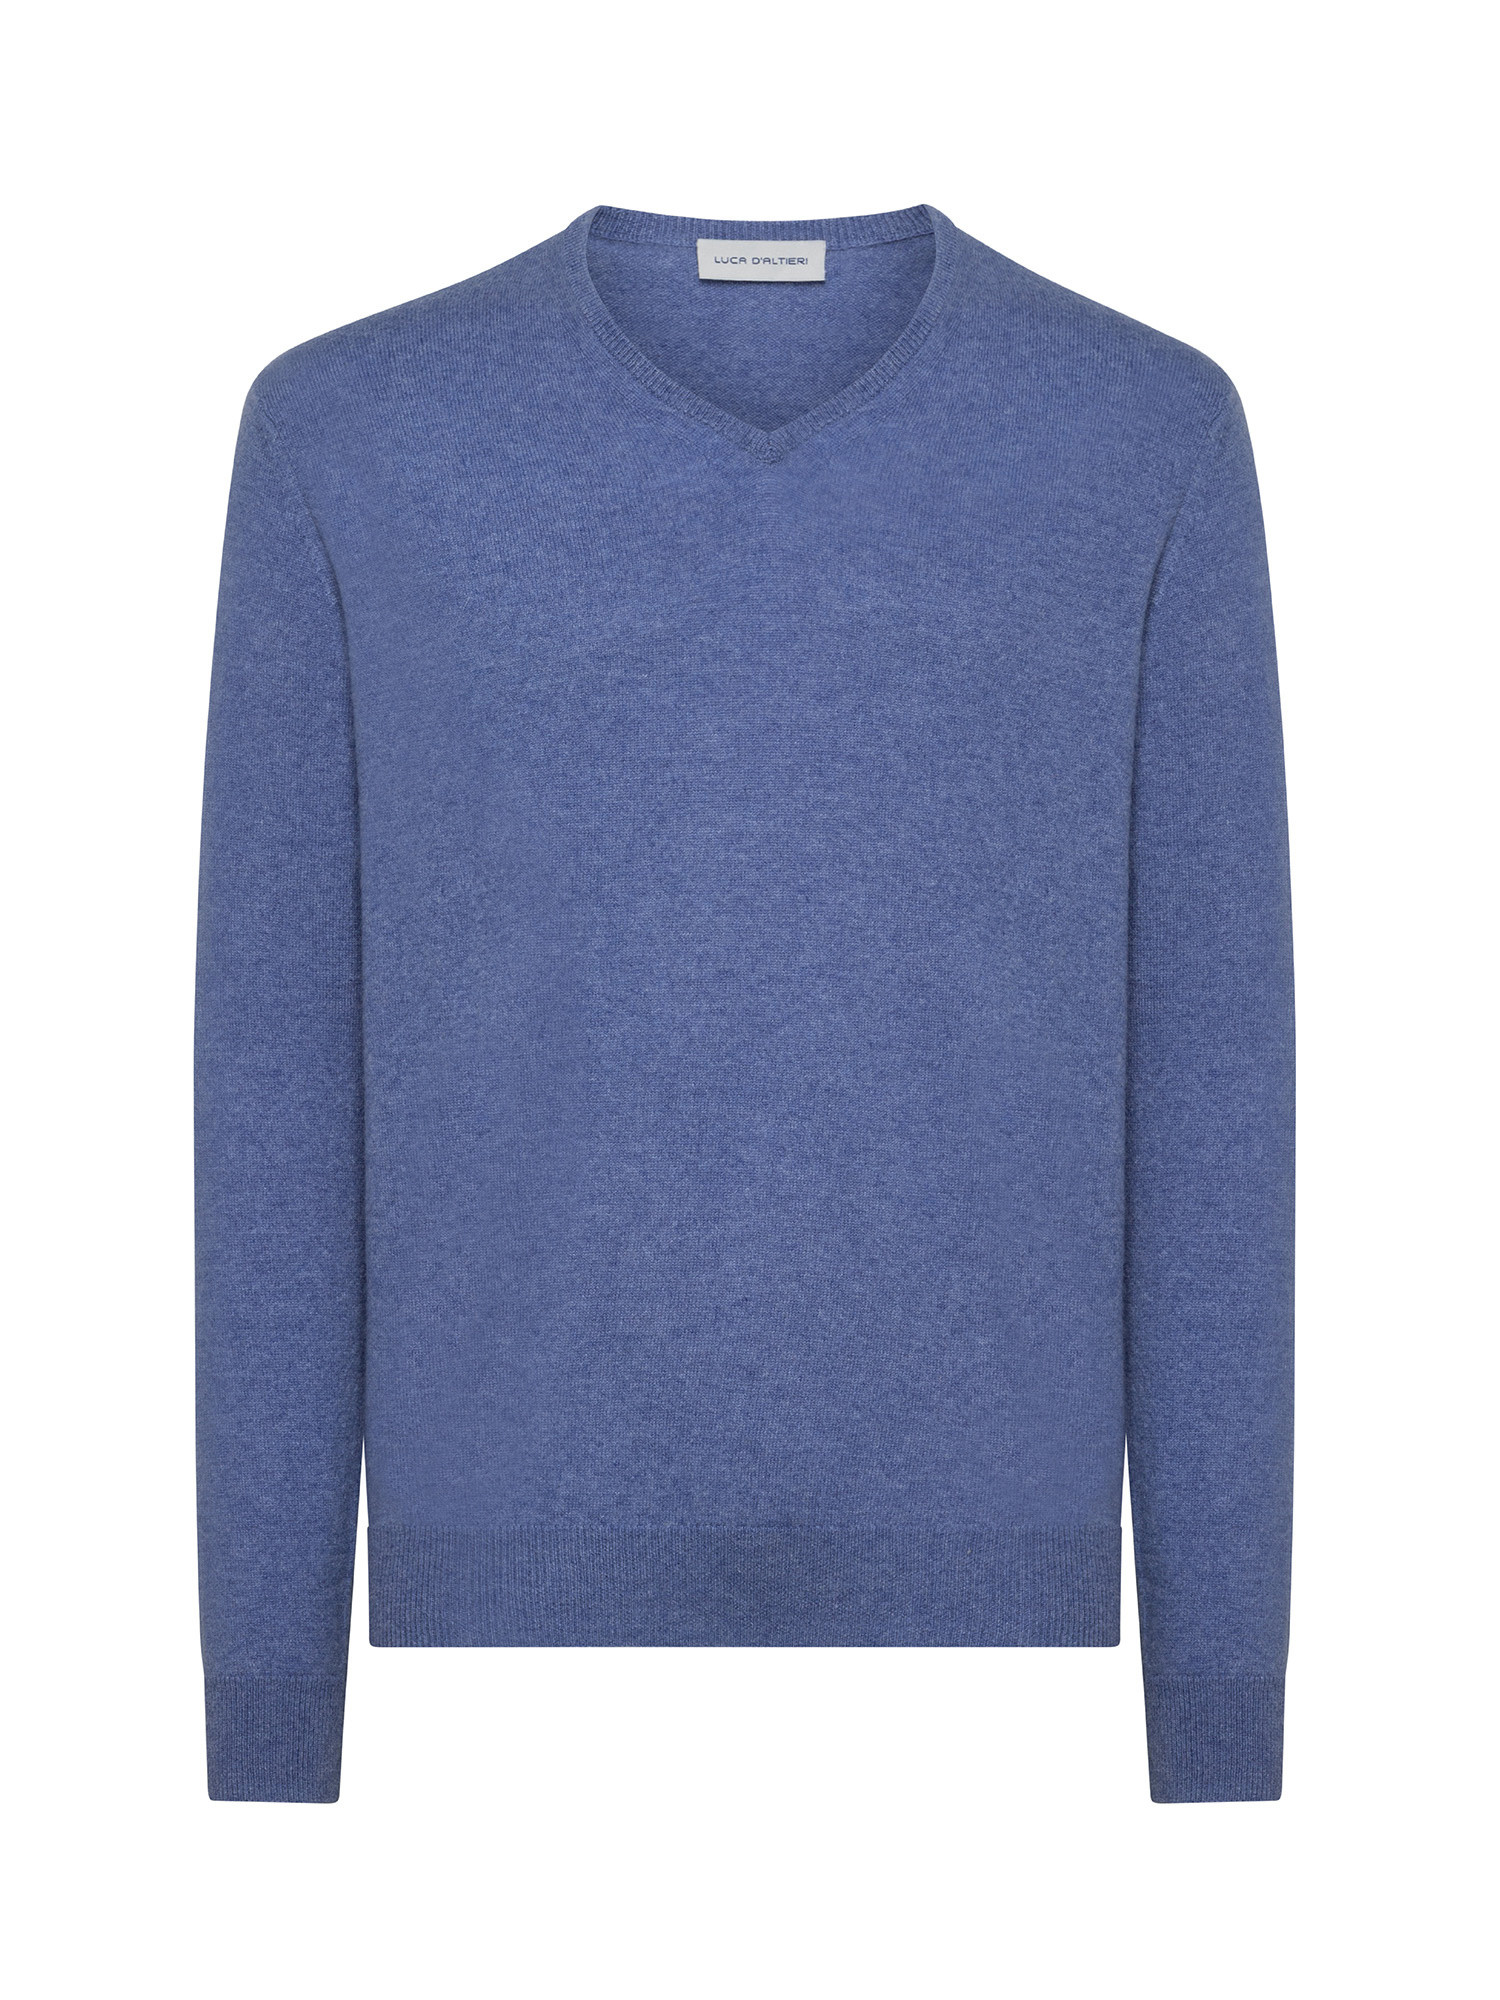 Пуловер с V-образным вырезом из чистого кашемира Luca D'Altieri, бледно-голубой женский пуловер с вышивкой и v образным вырезом